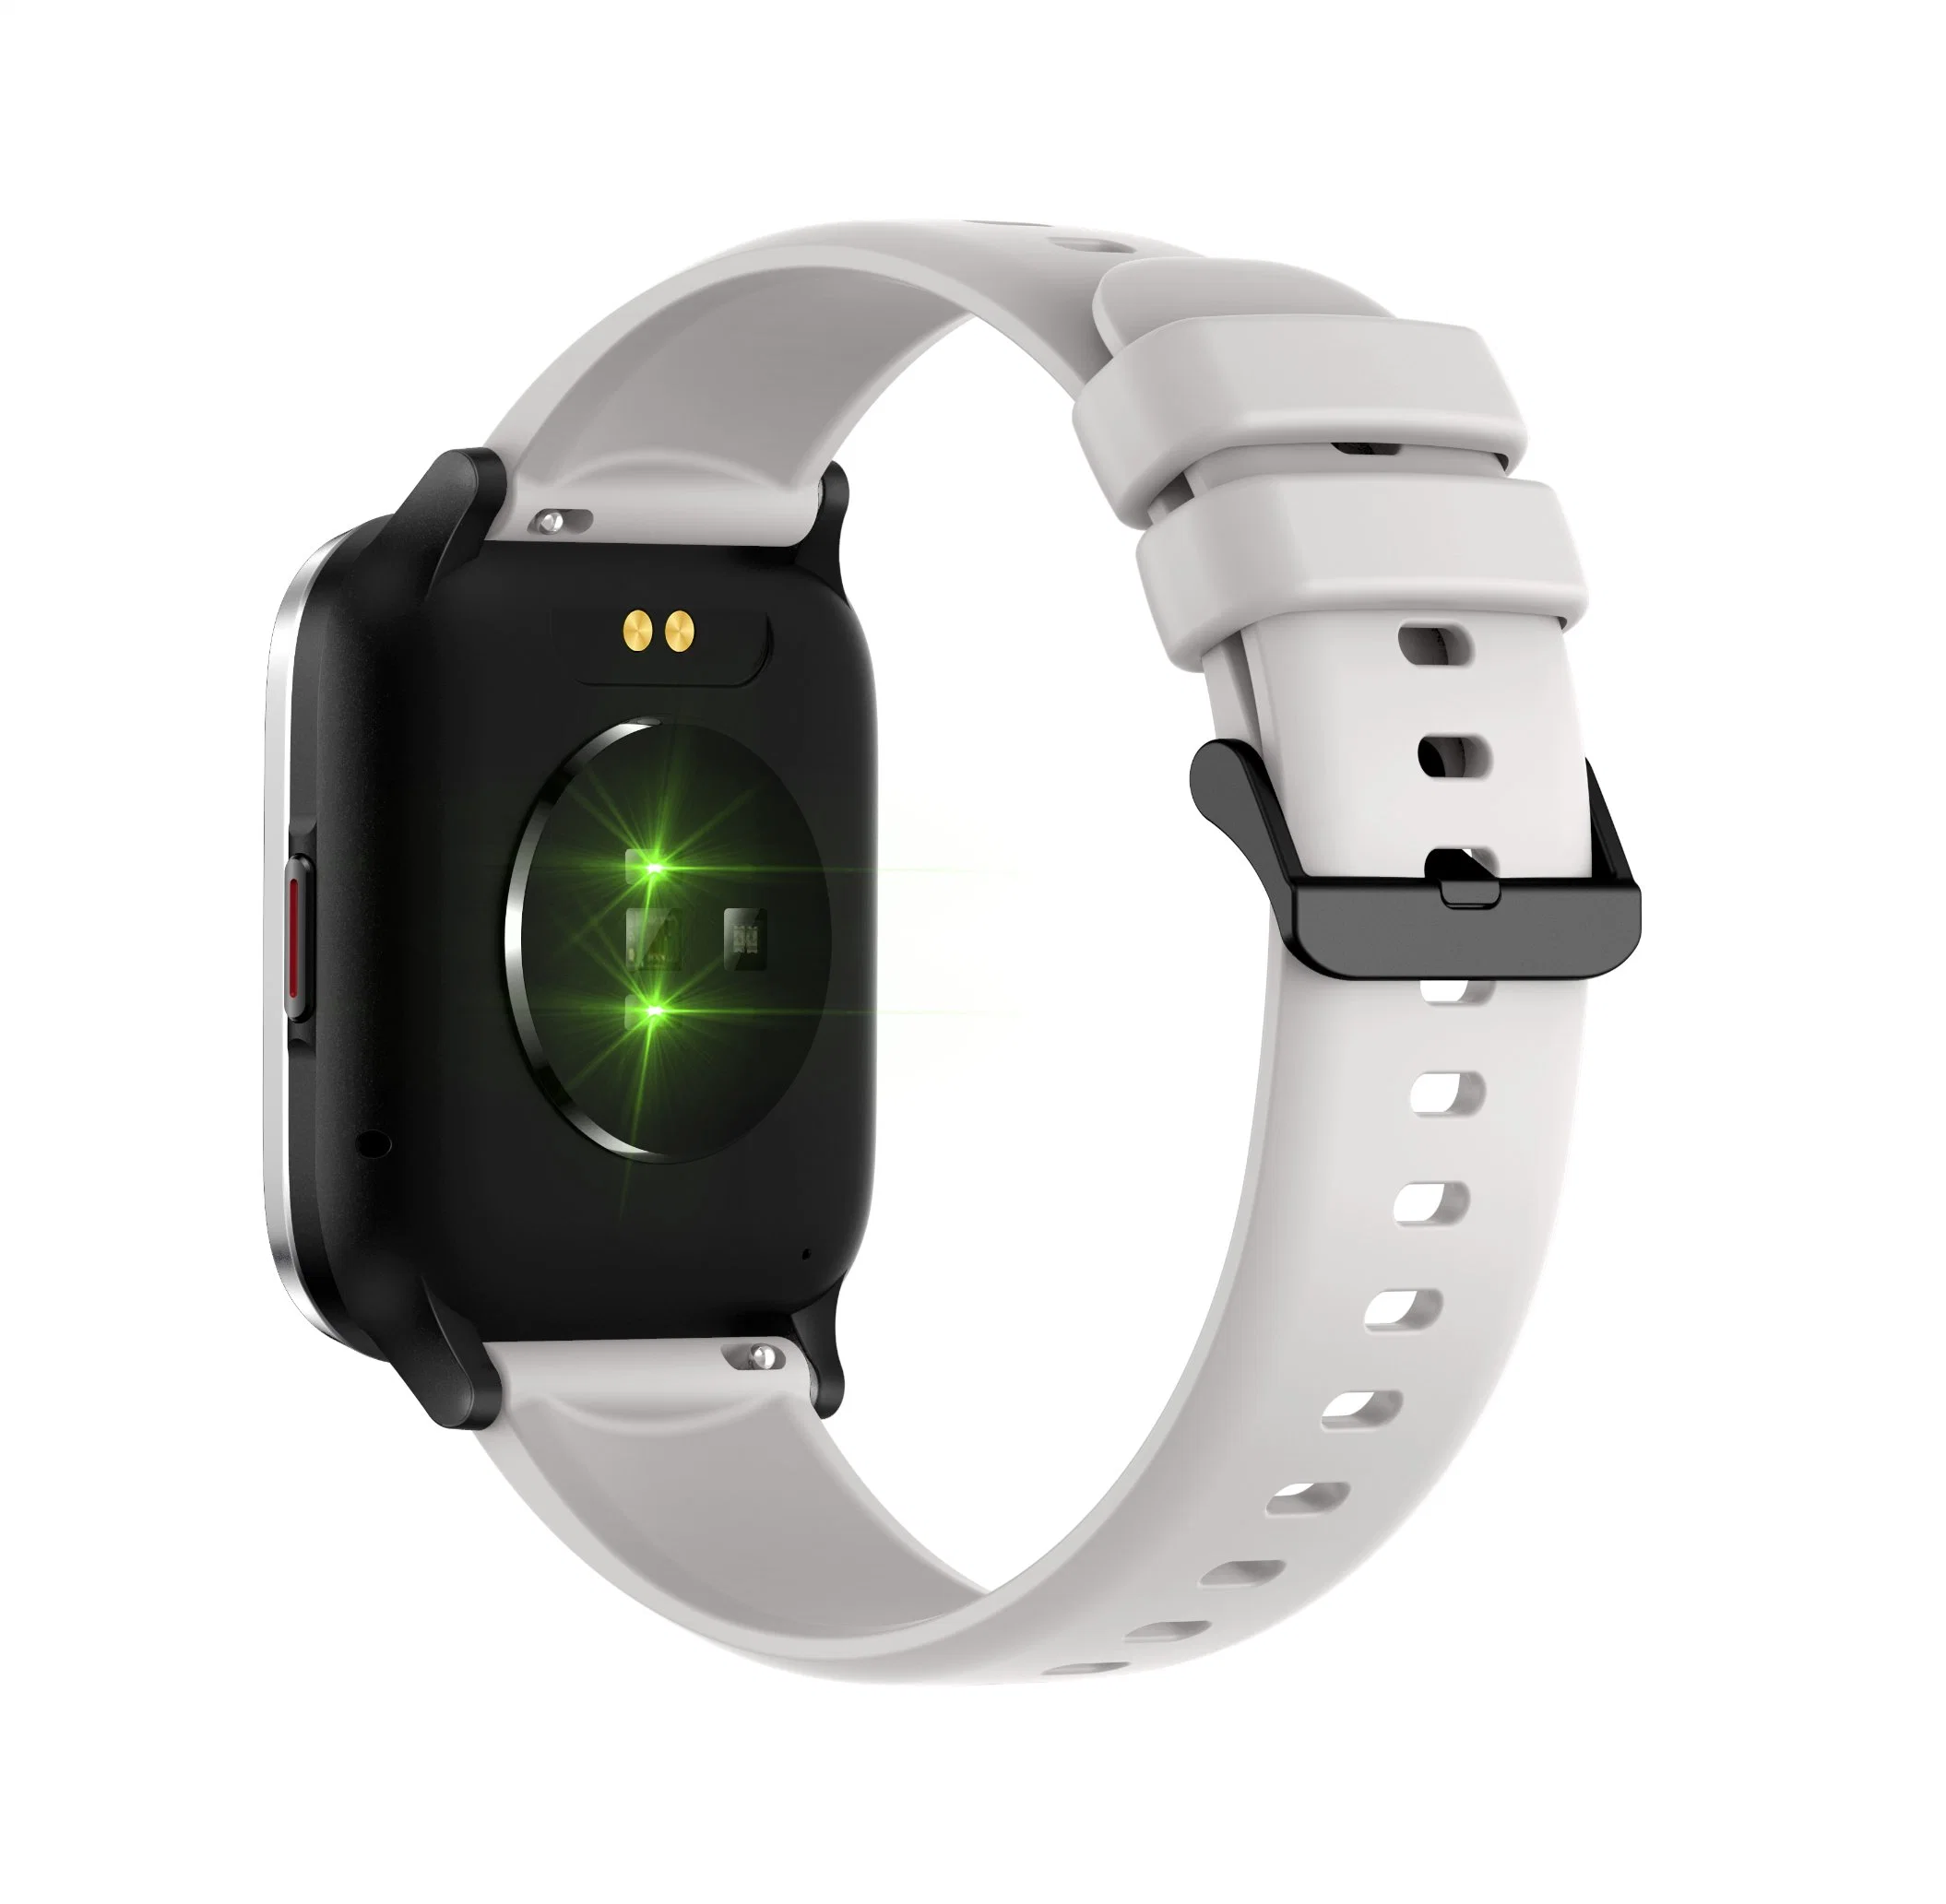 Watch Smart Watch Gift Swiss Promotion Watch Digital Automatic Mechanial Watch Sports Fashion China Watch